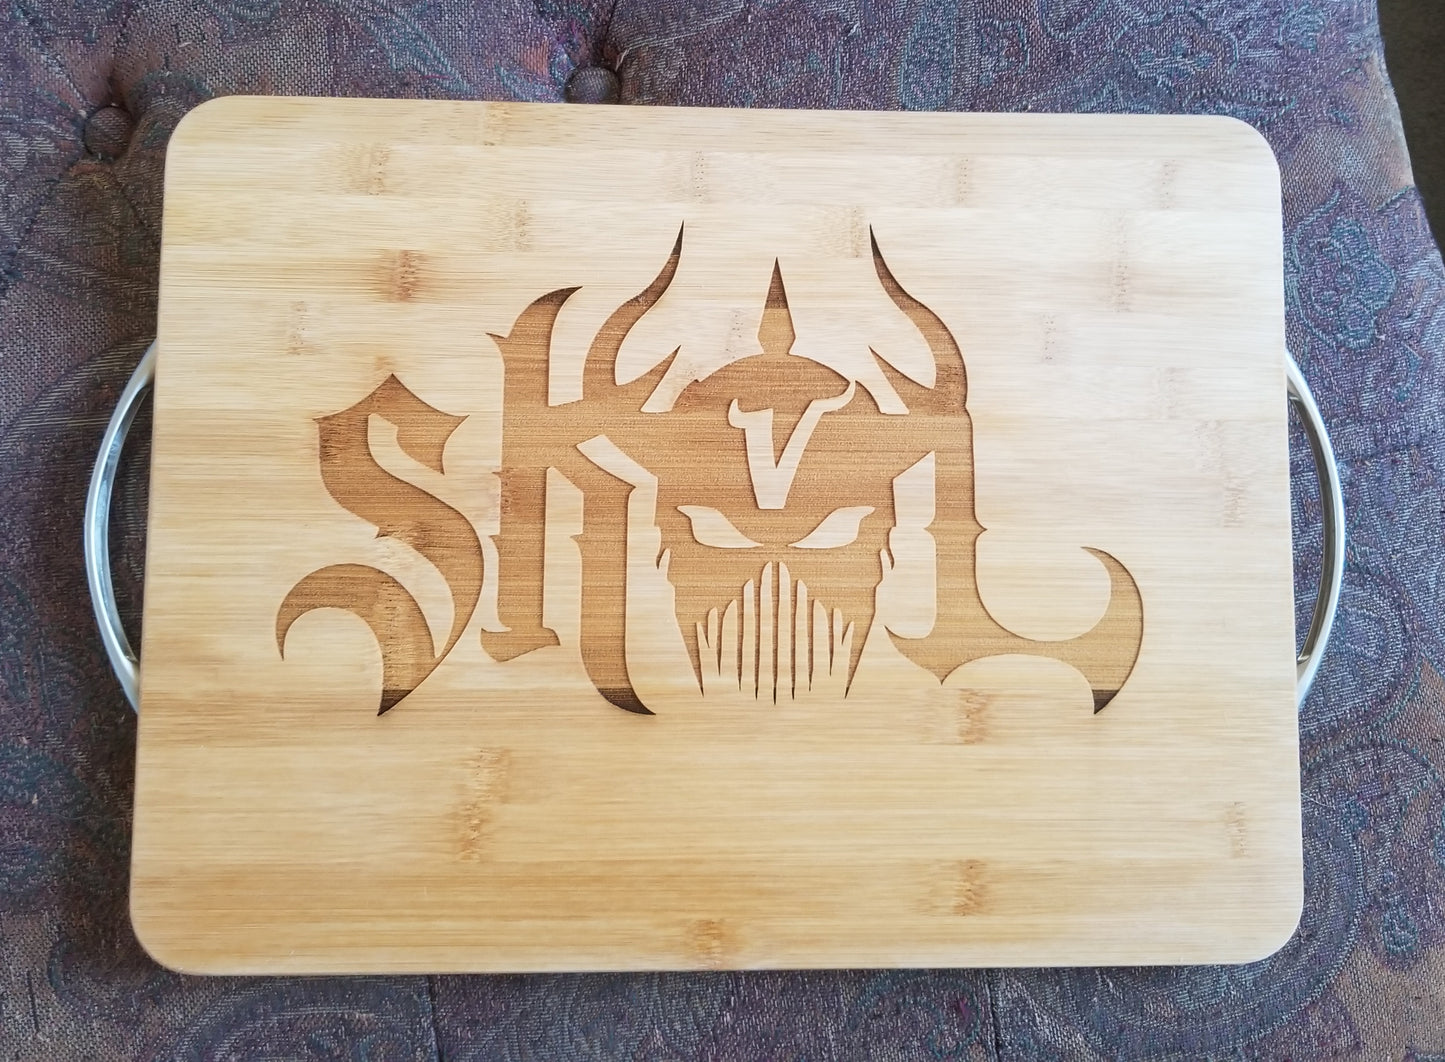 SKOL cutting board (12 x 18)